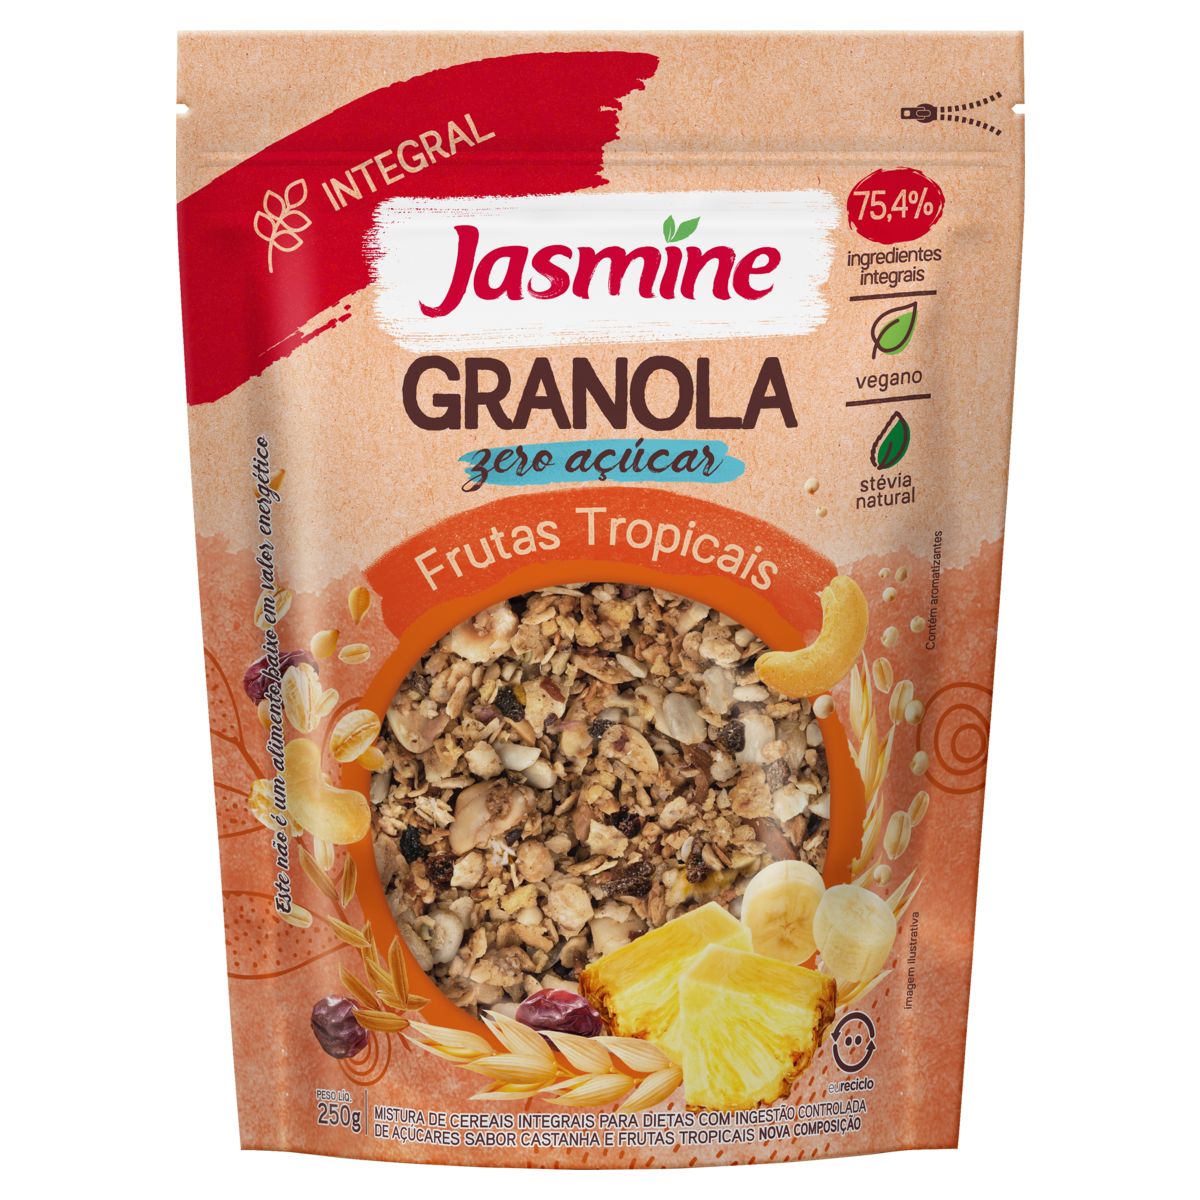 Granola Jasmine Frutas Tropicais Zero Açúcar 75,4% Integral 250g